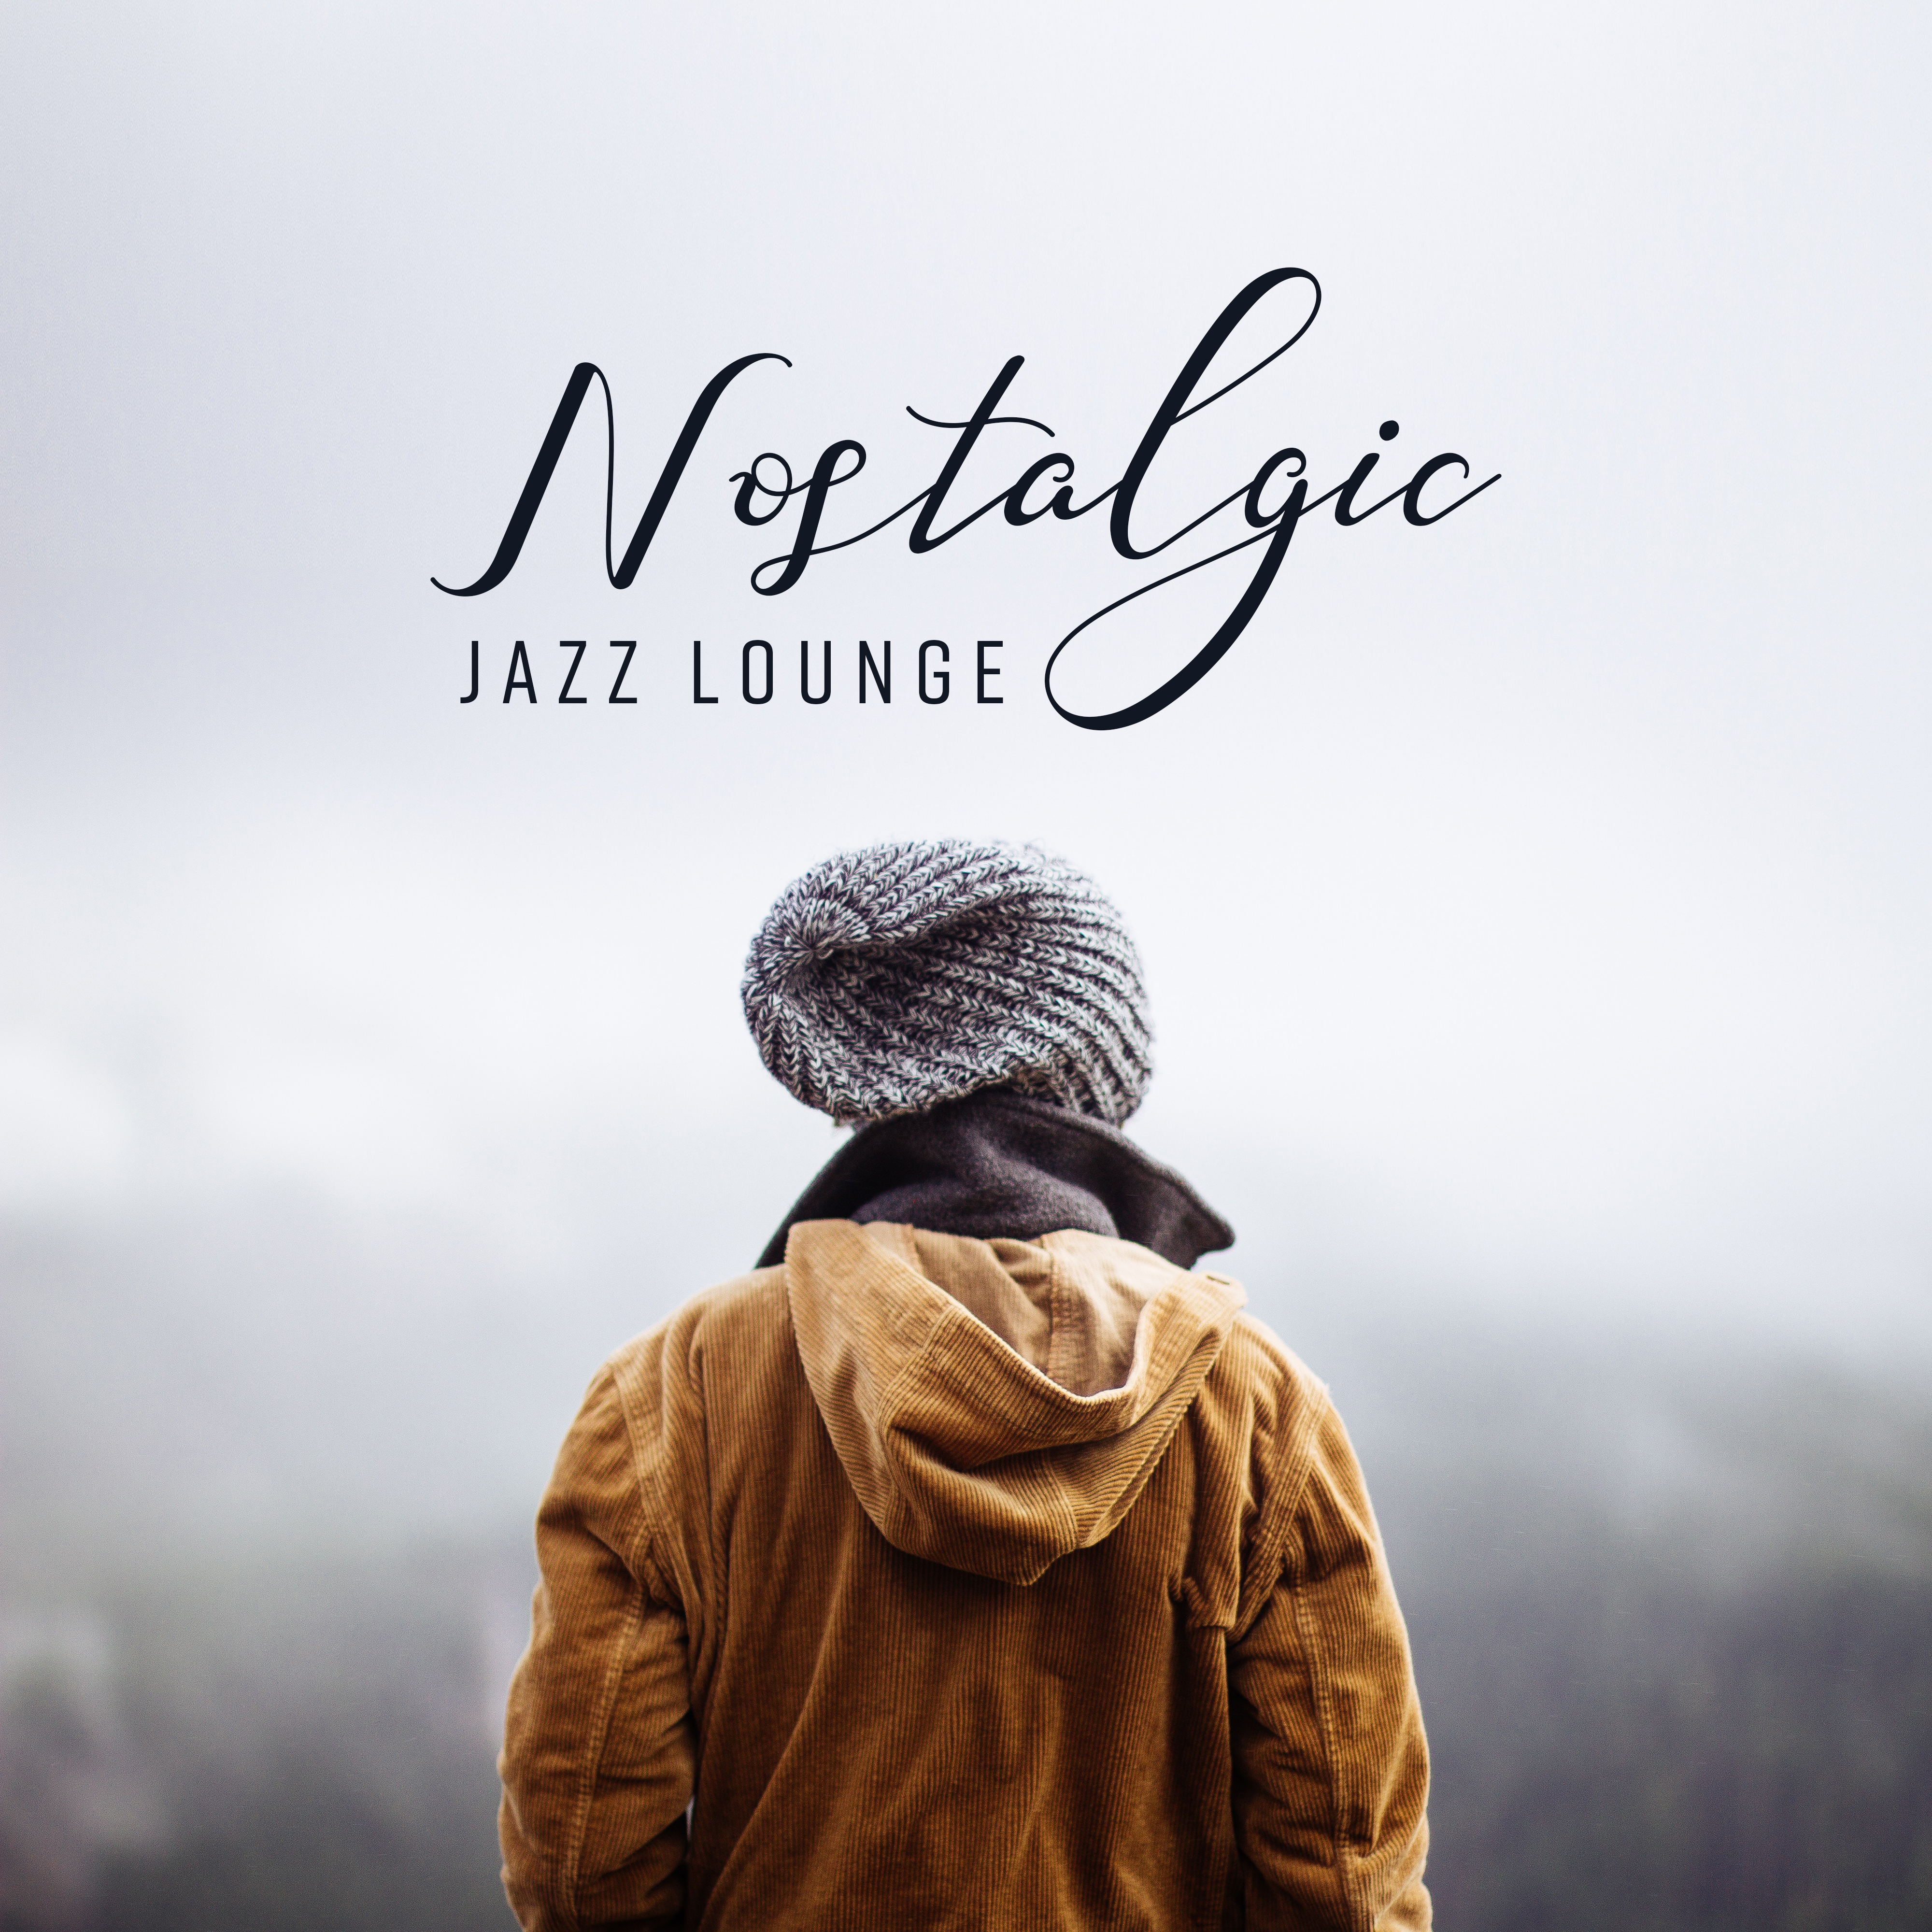 Nostalgic Jazz Lounge